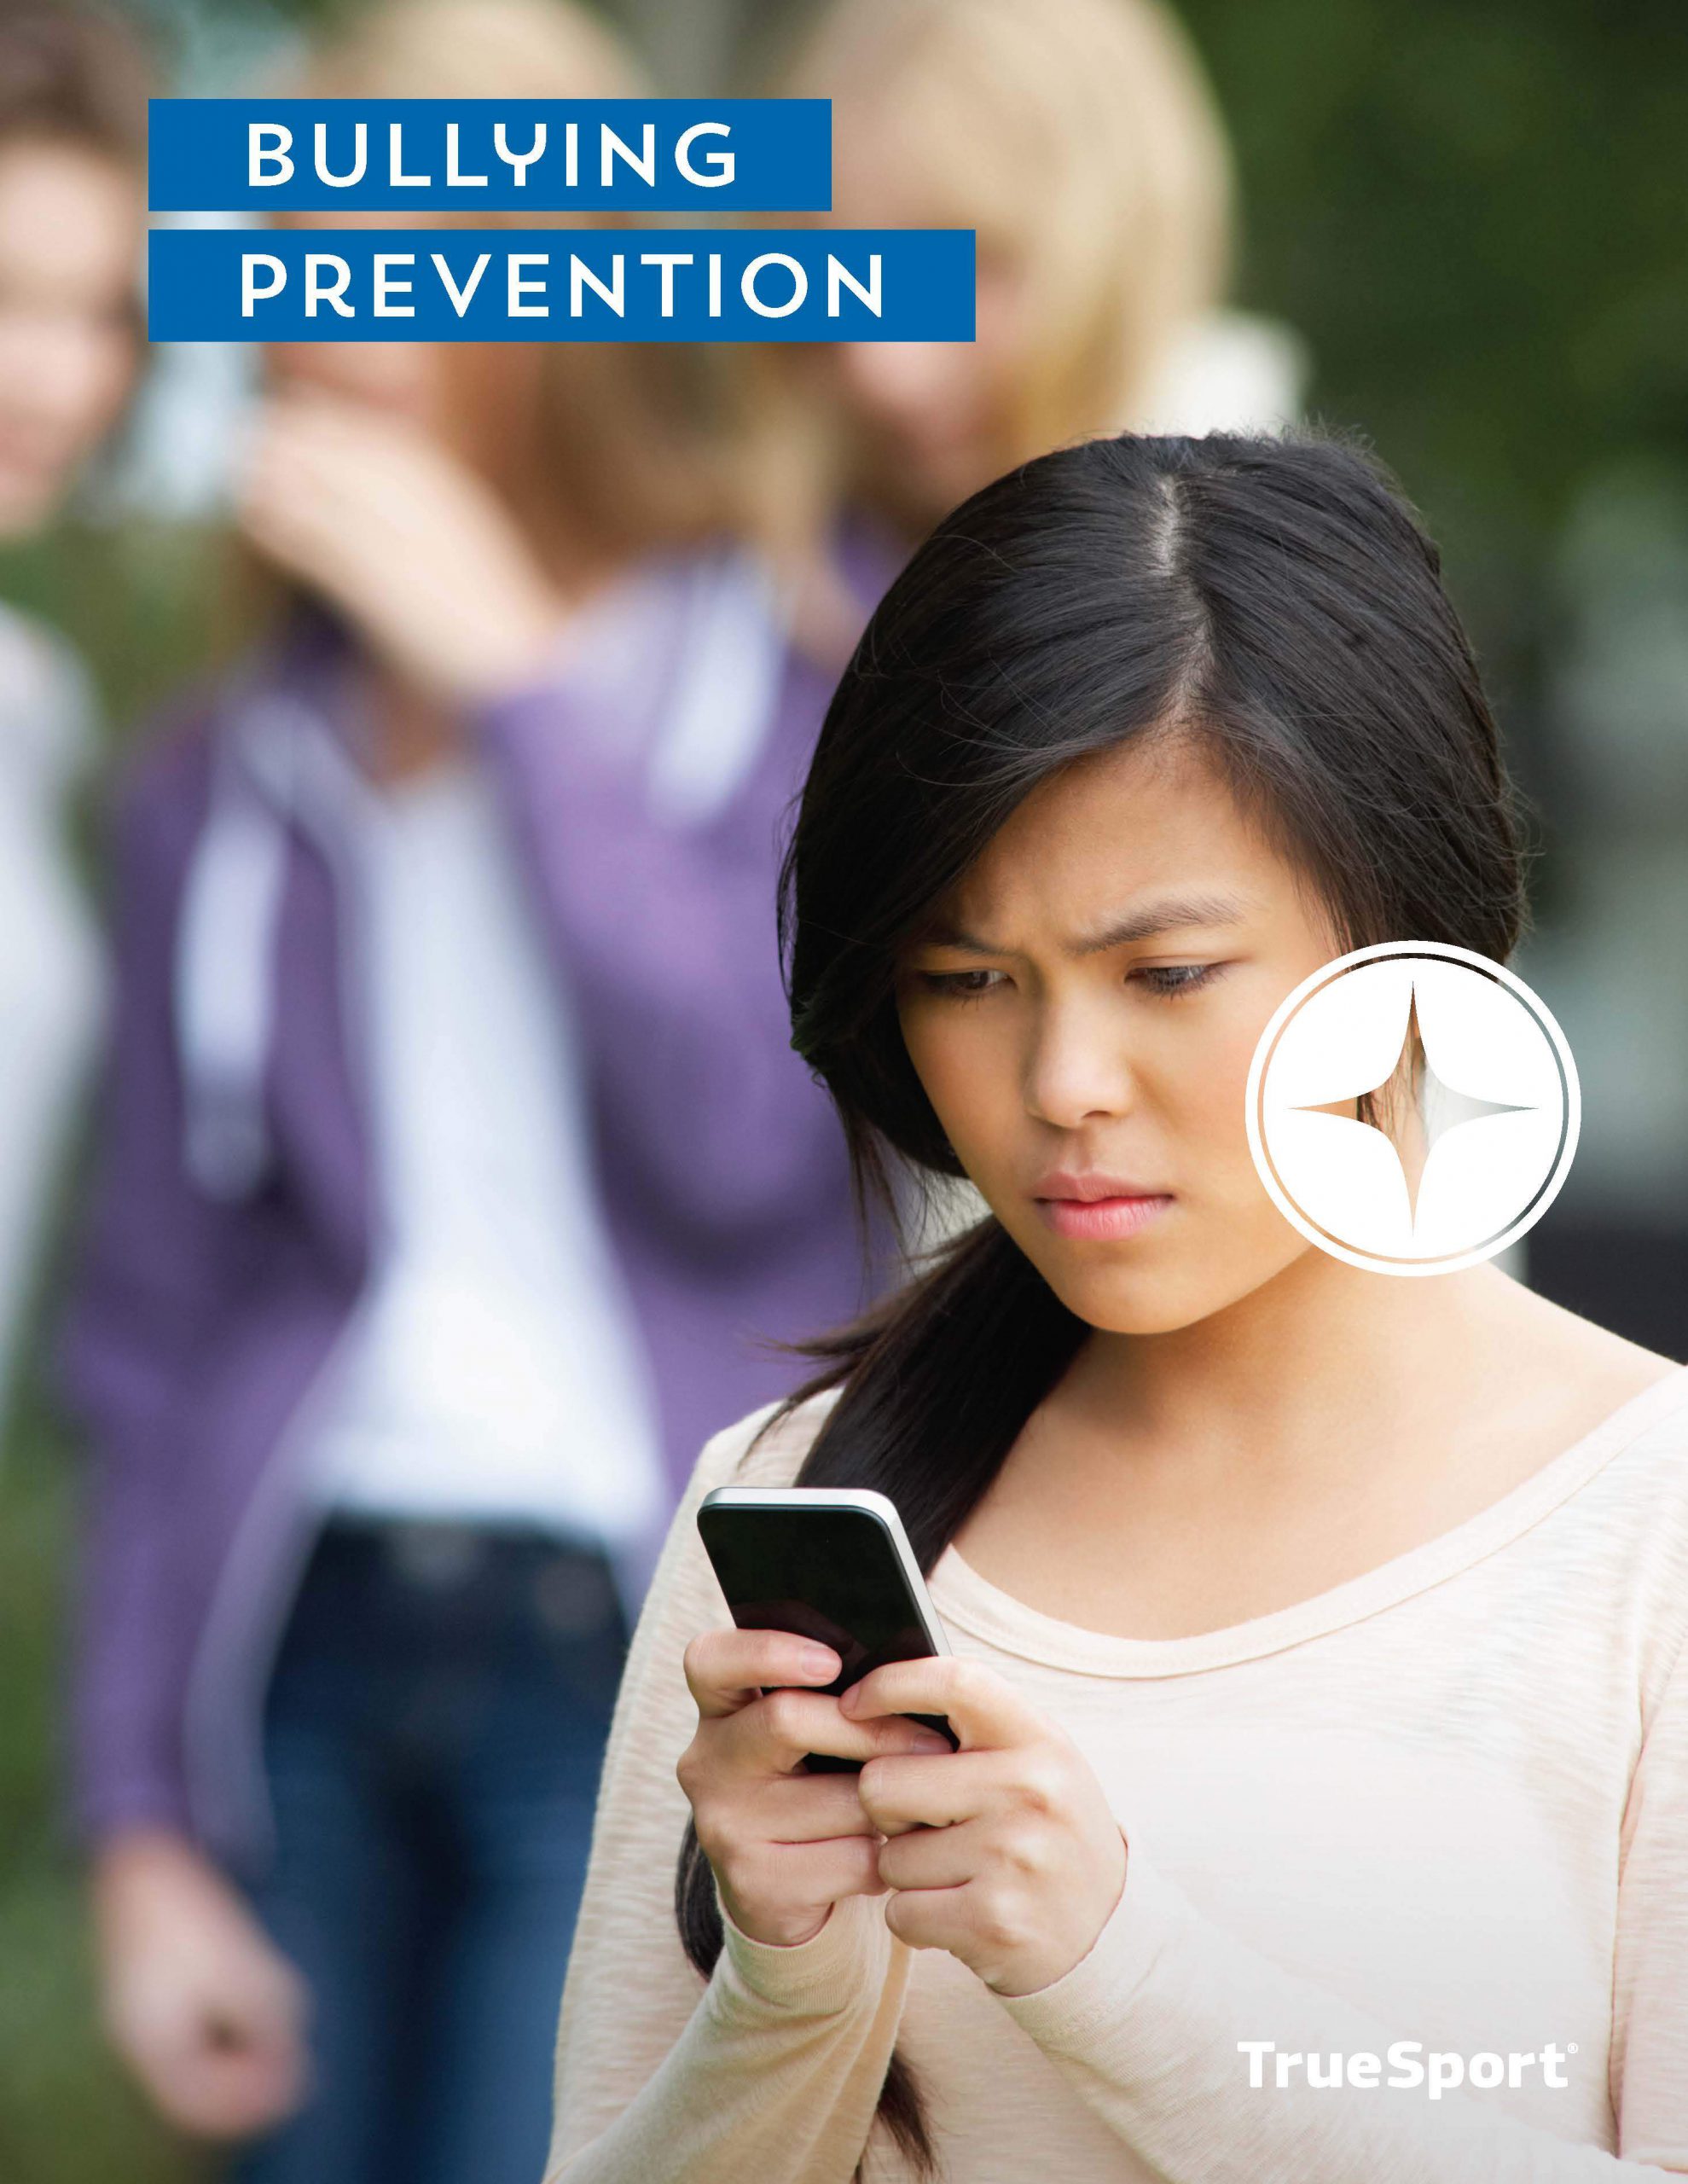 TrueSport bullying prevention lesson cover image.